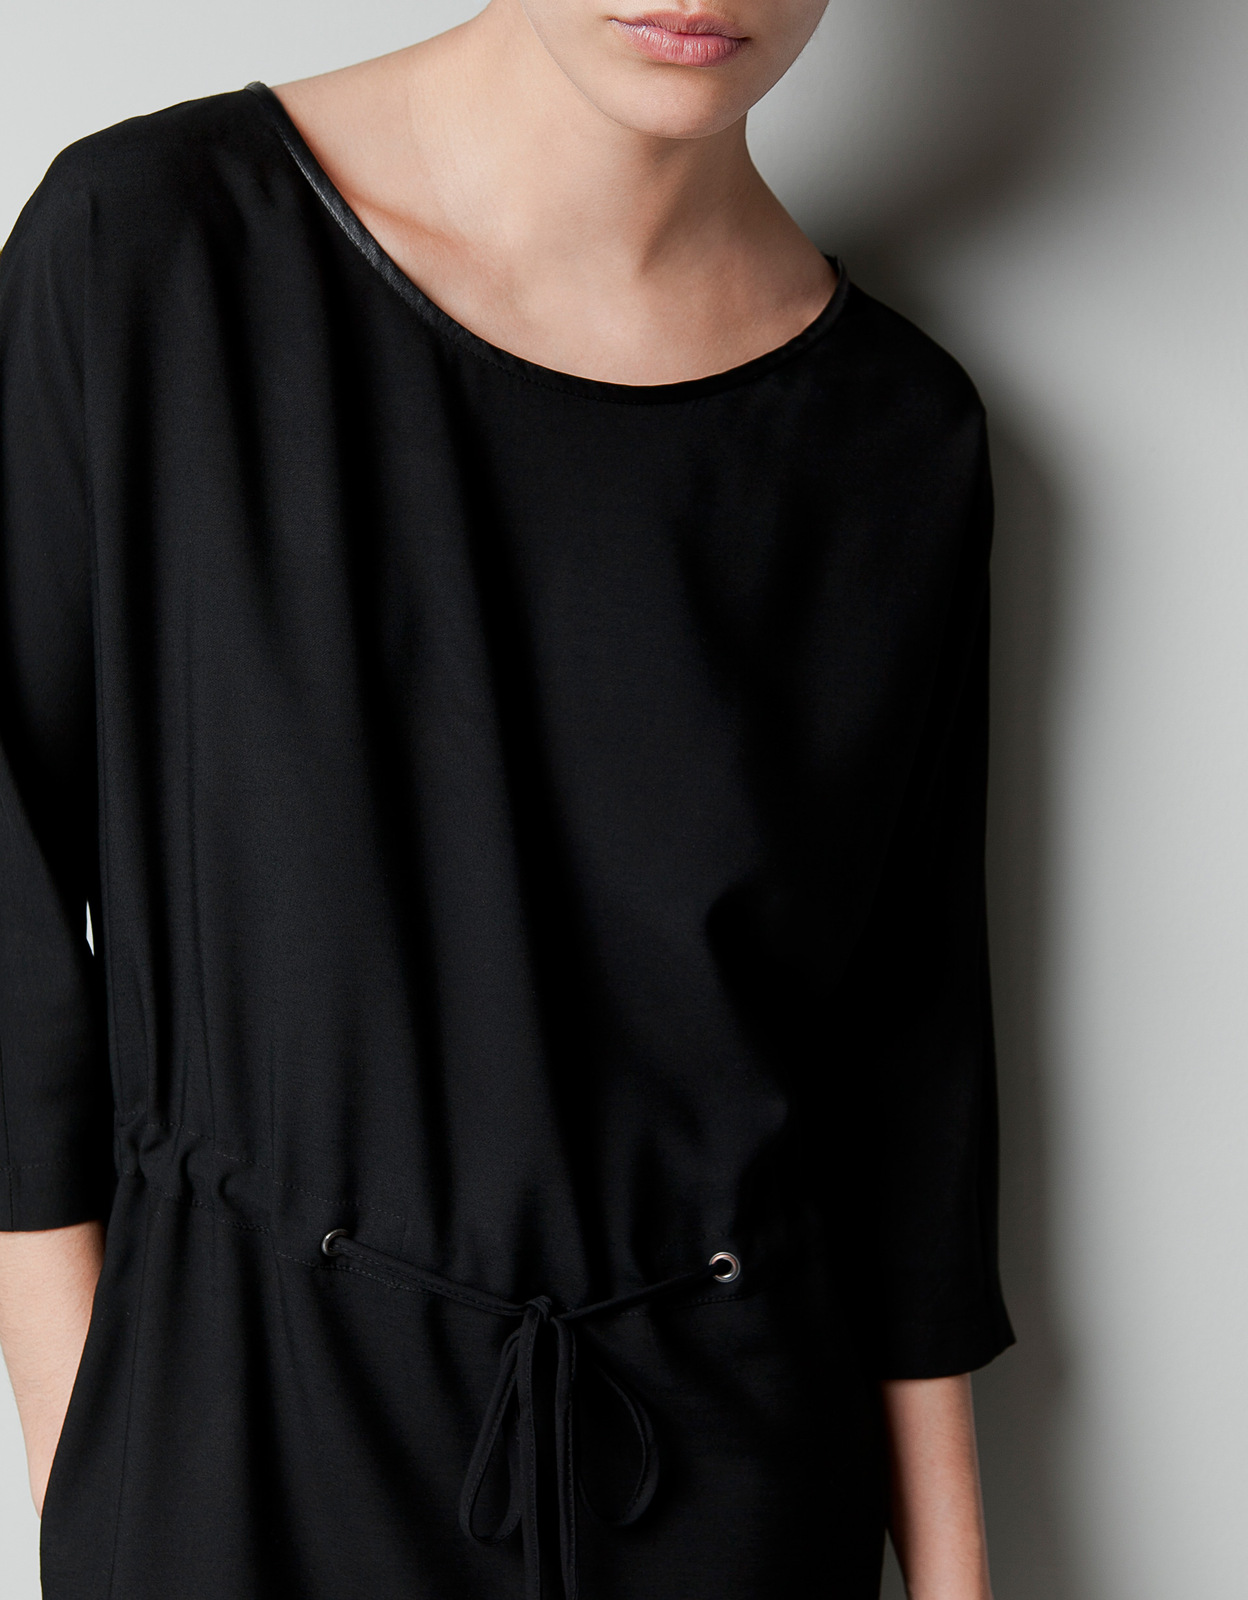 Zara fekete ruha 2012.10.21 fotója